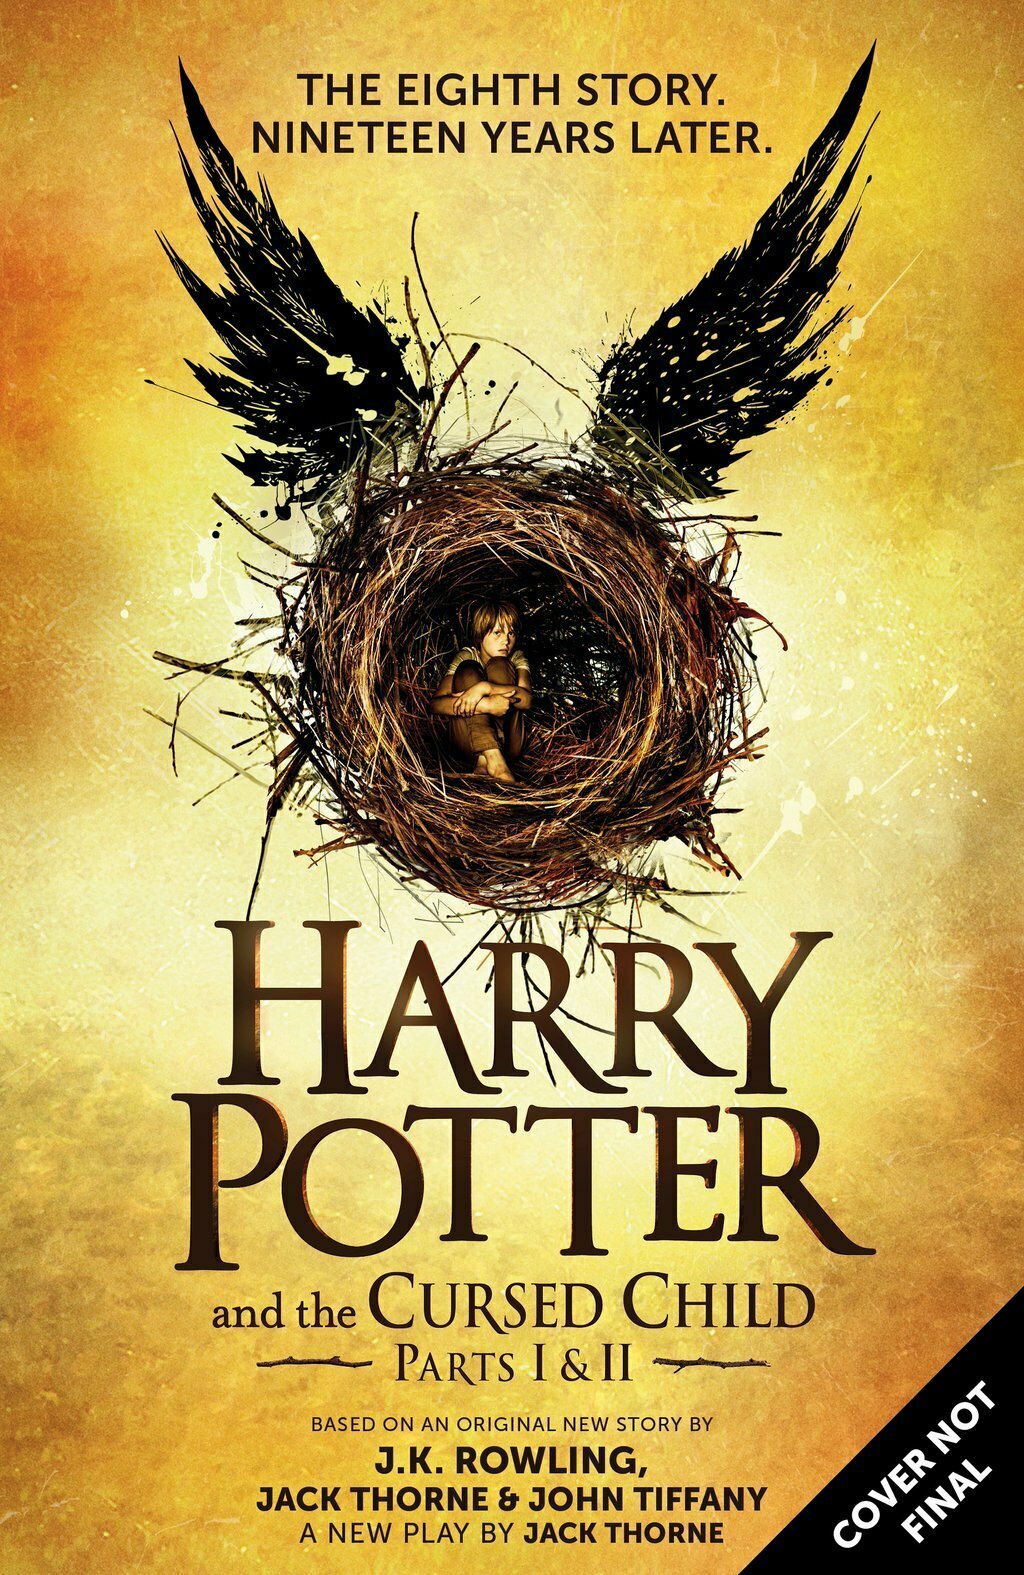 Harry Potter, The Cursed Child arriverà presto in Italia